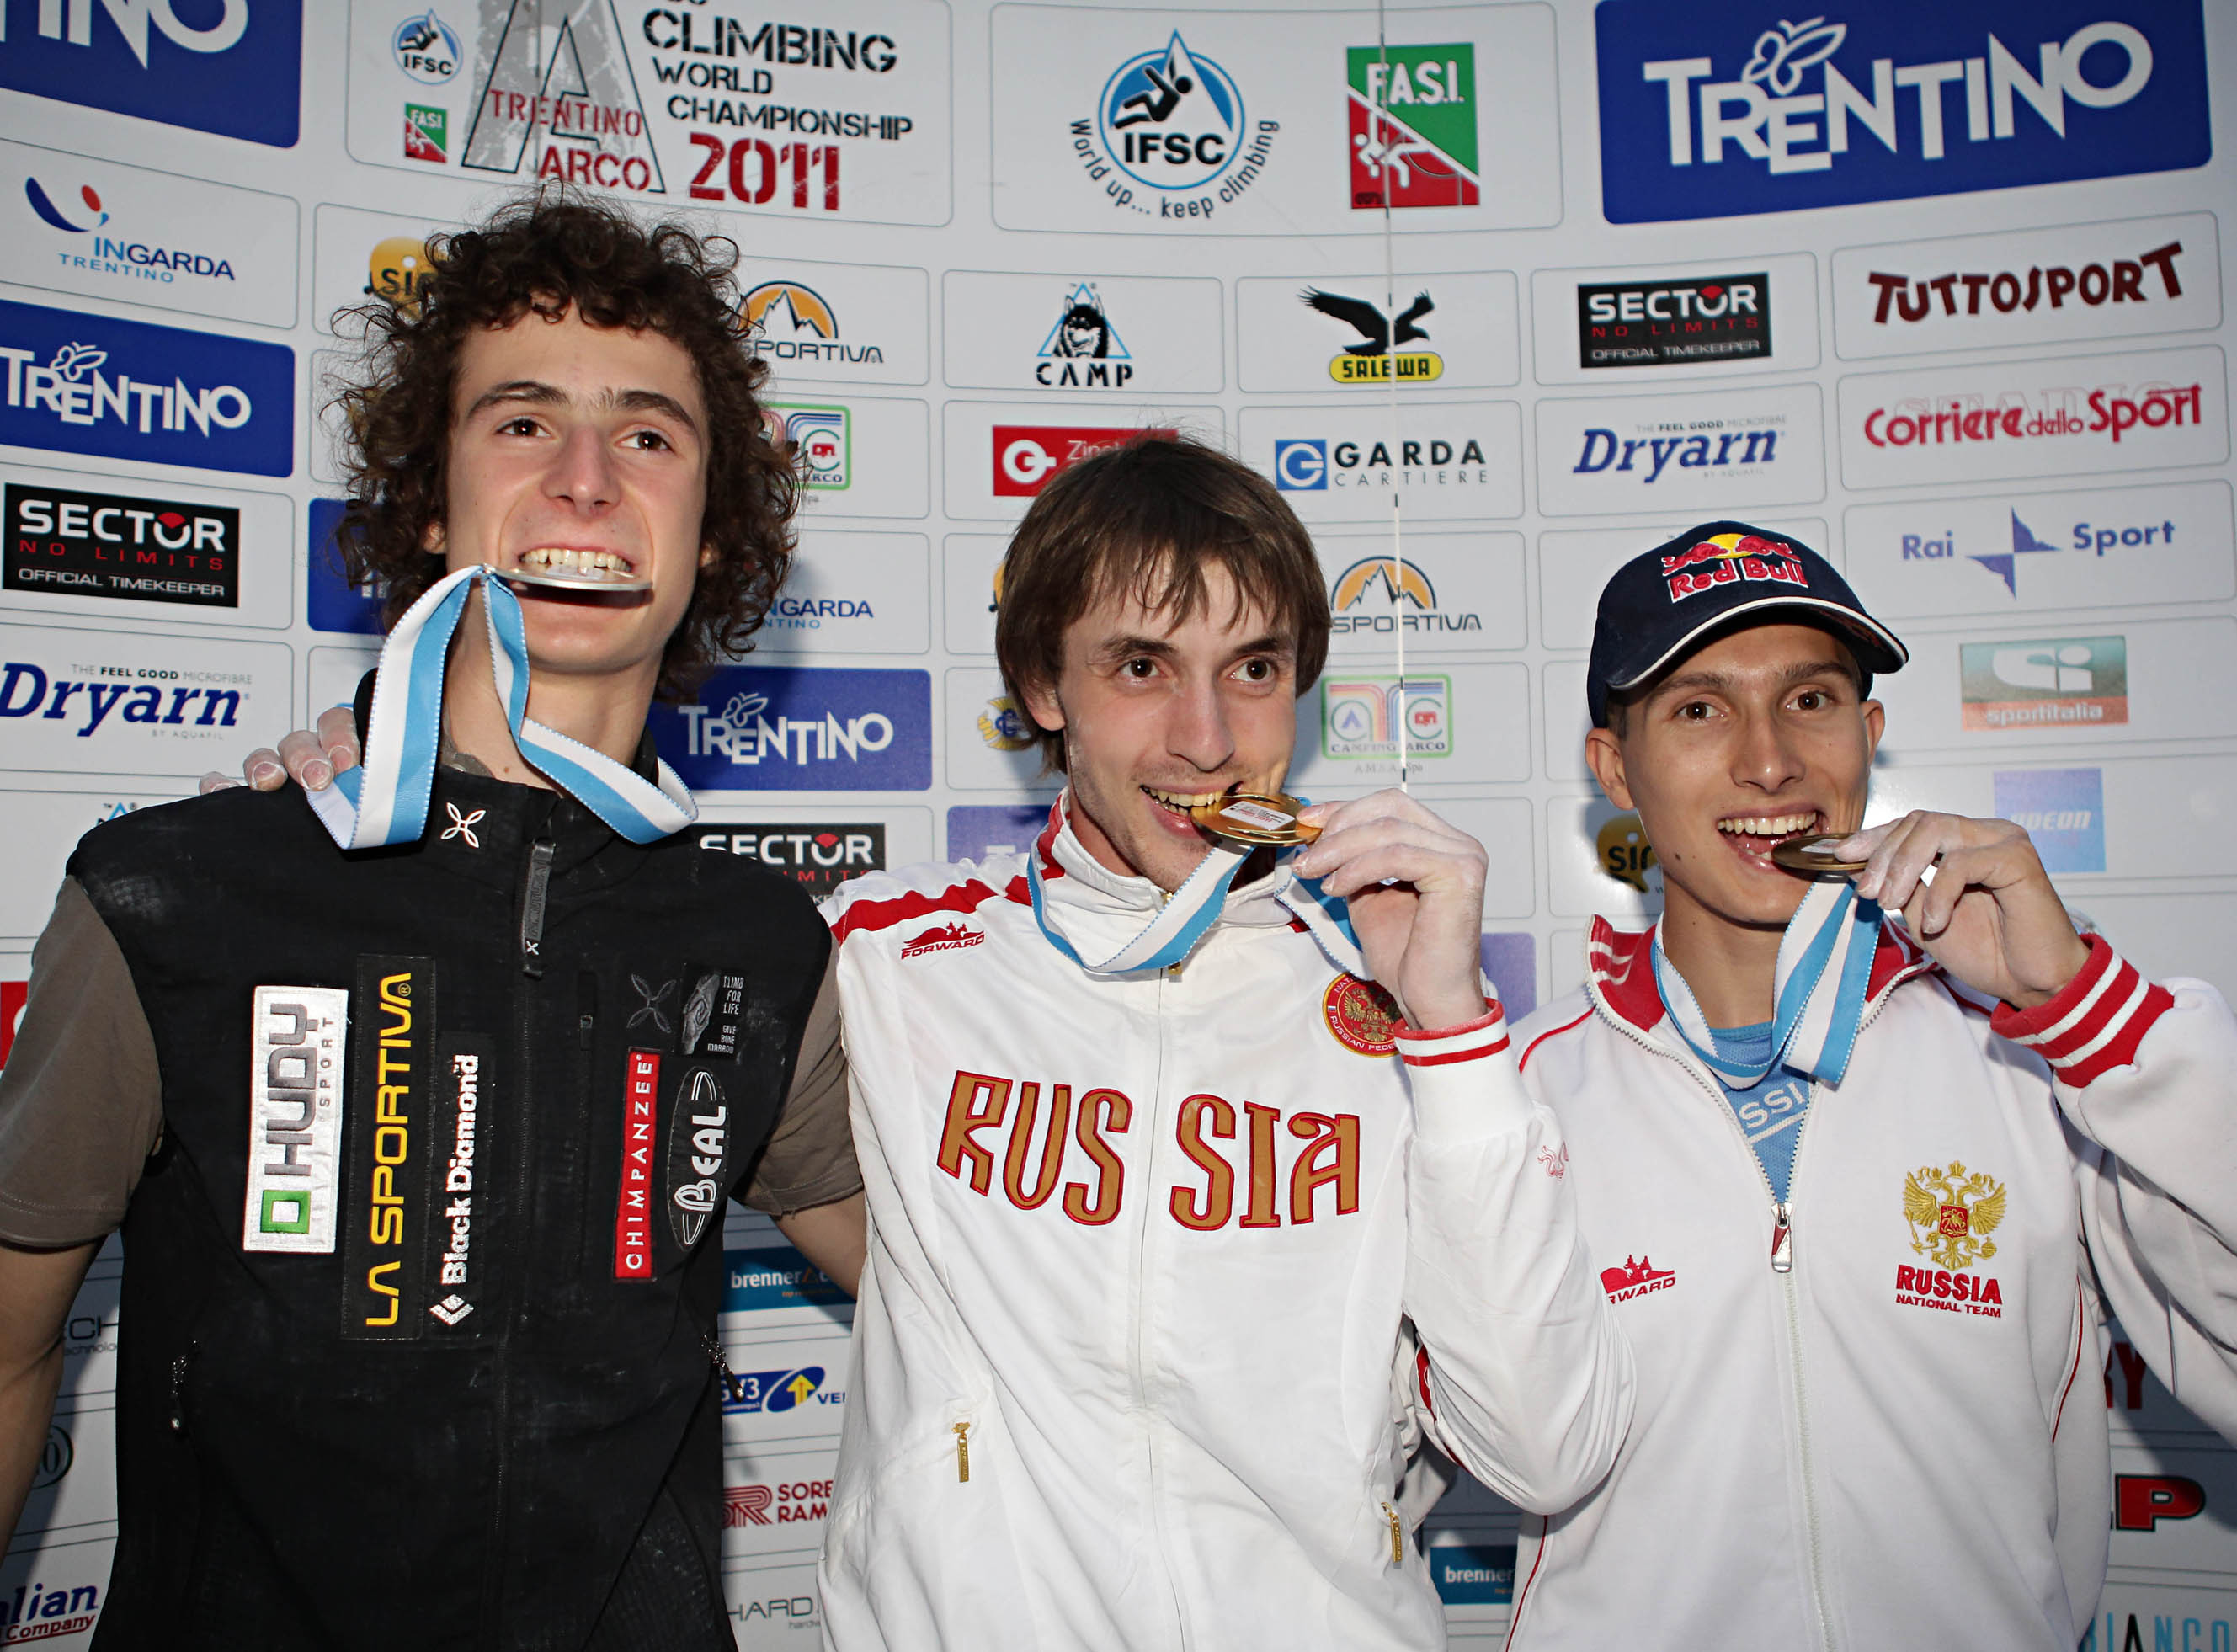 Arco 2011: Dmitry Sharafutnidov Ã¨ campione del mondo boulder